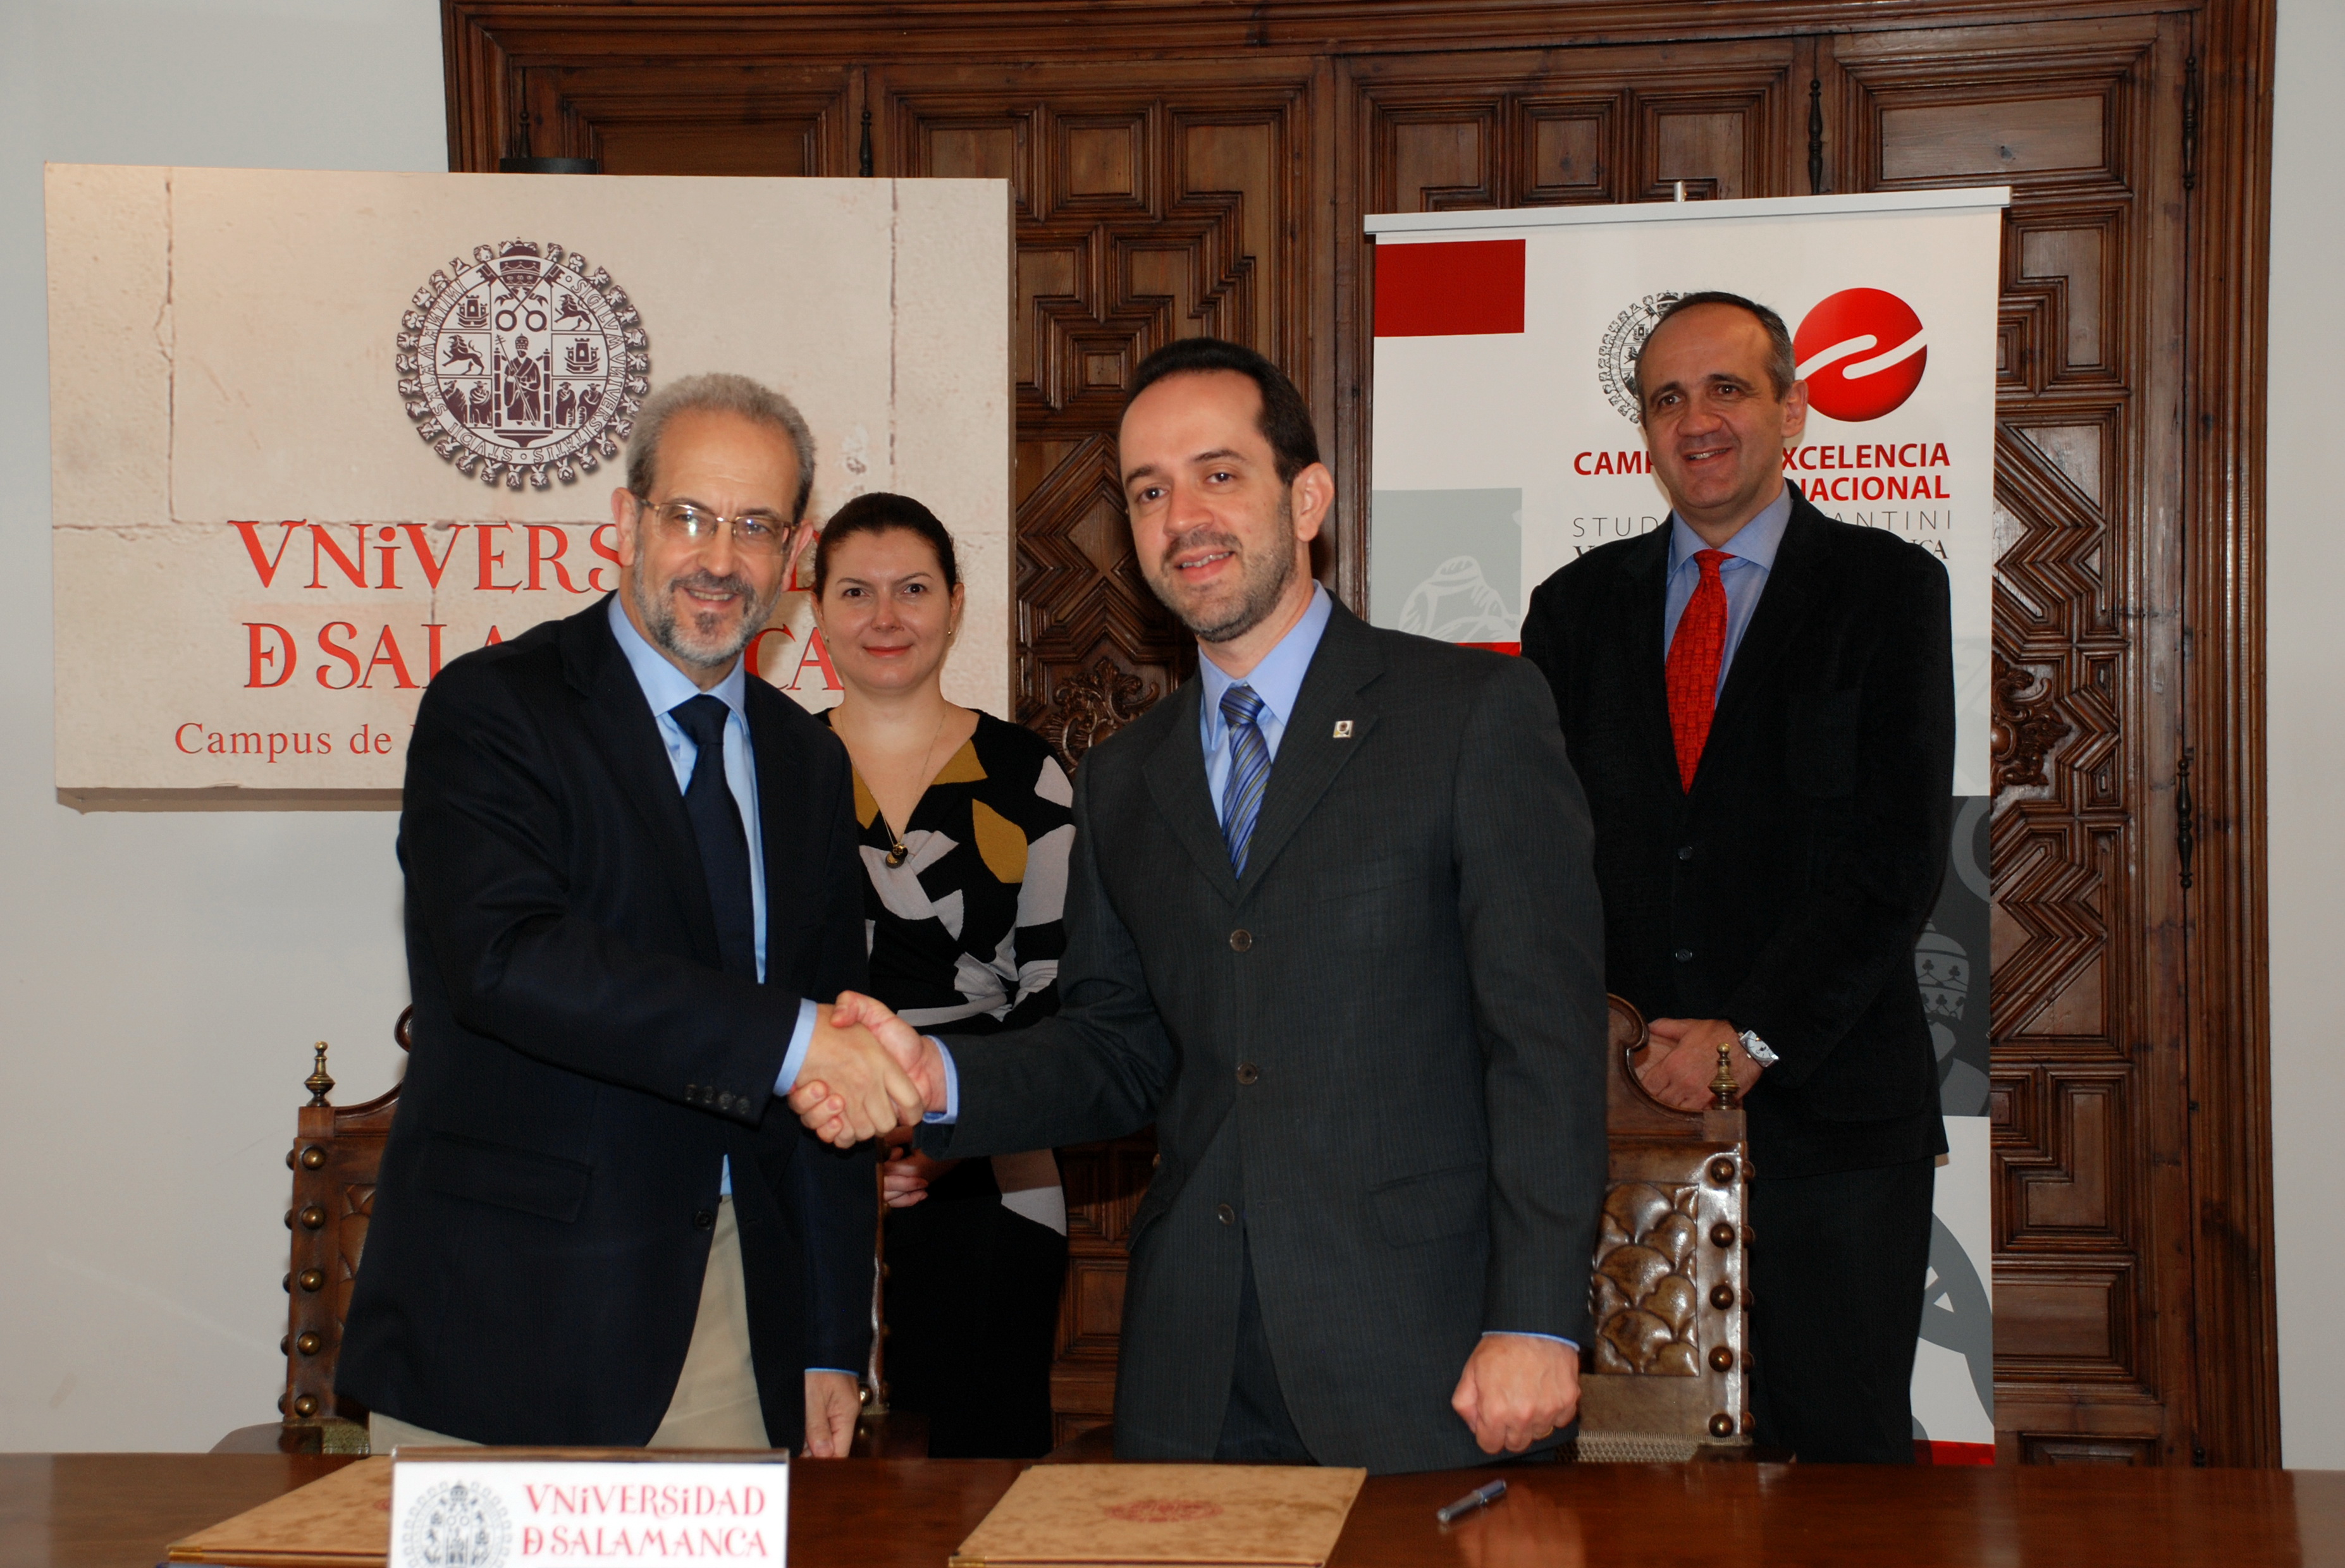 La Universidad de Salamanca y la Contraloría General de la Unión de Brasil suscriben un convenio de colaboración